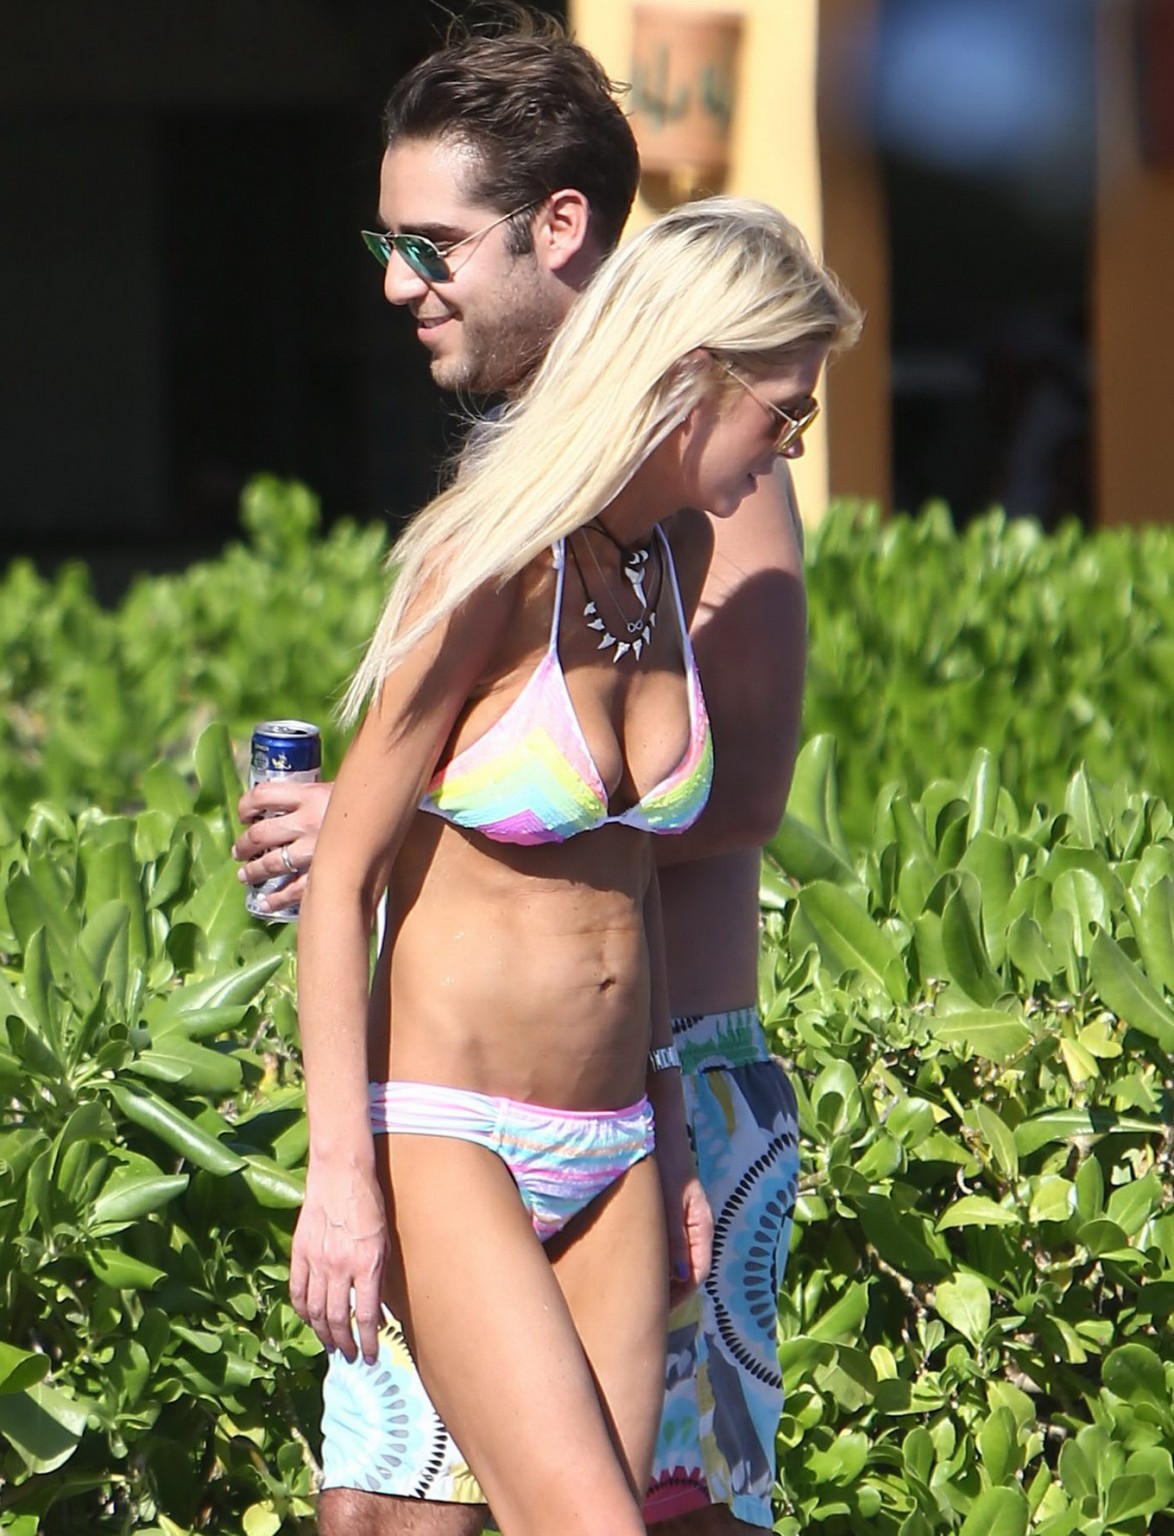 Tara reid indossa un bikini con stampa arcobaleno a bordo piscina alle Hawaii
 #75176671